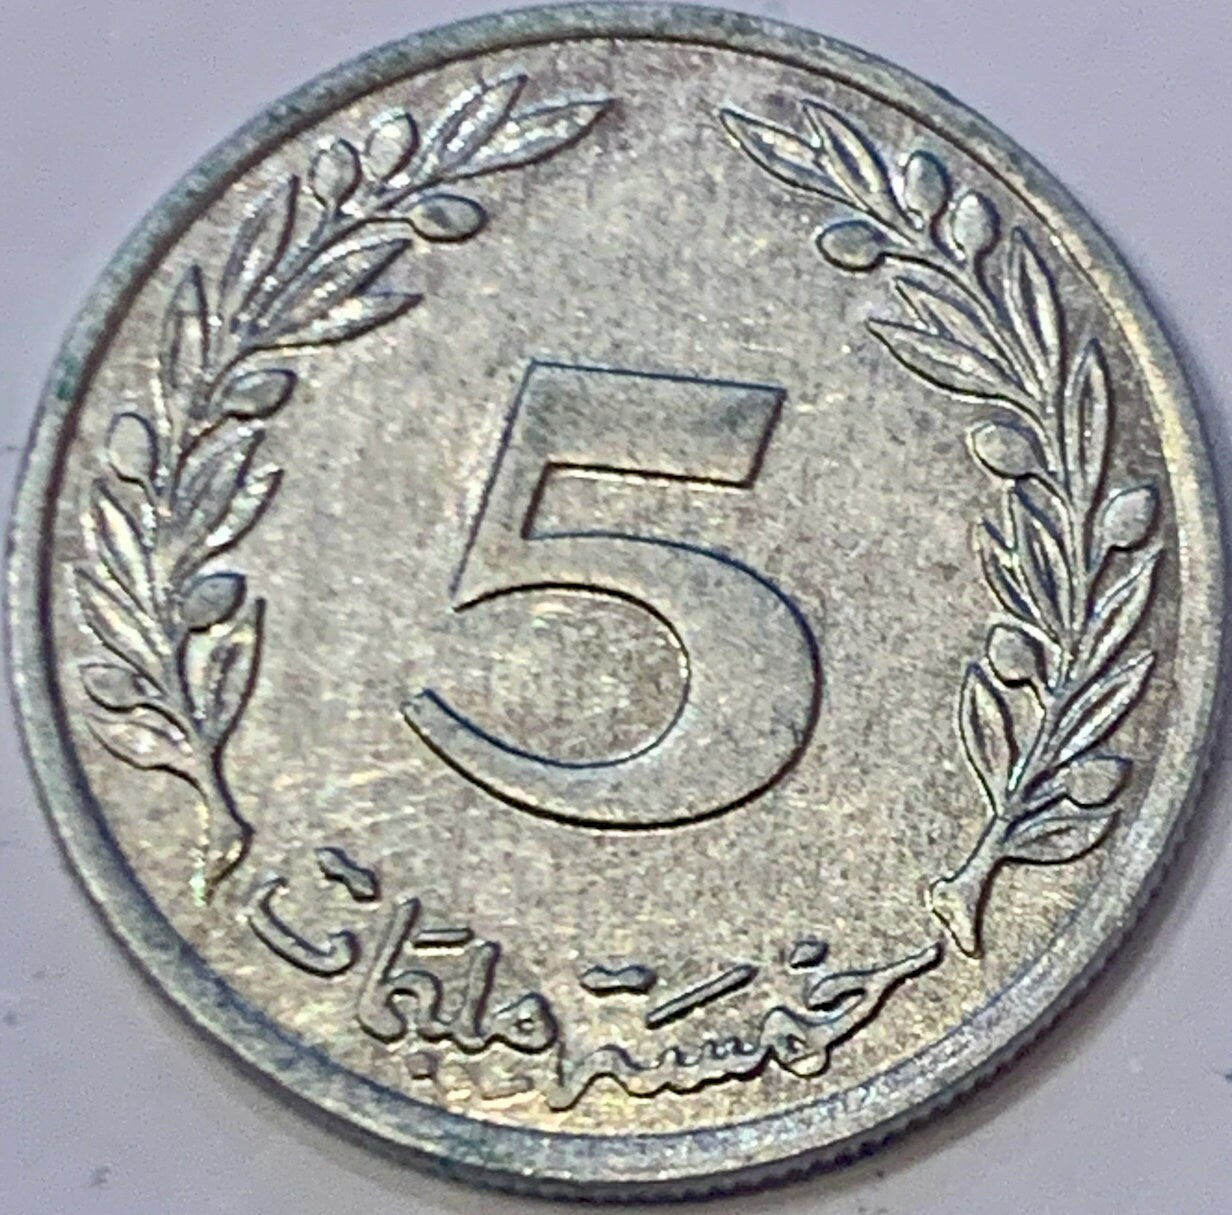 1997 Tunisia 5 Millimes Aluminium Coin (2 Pieces)